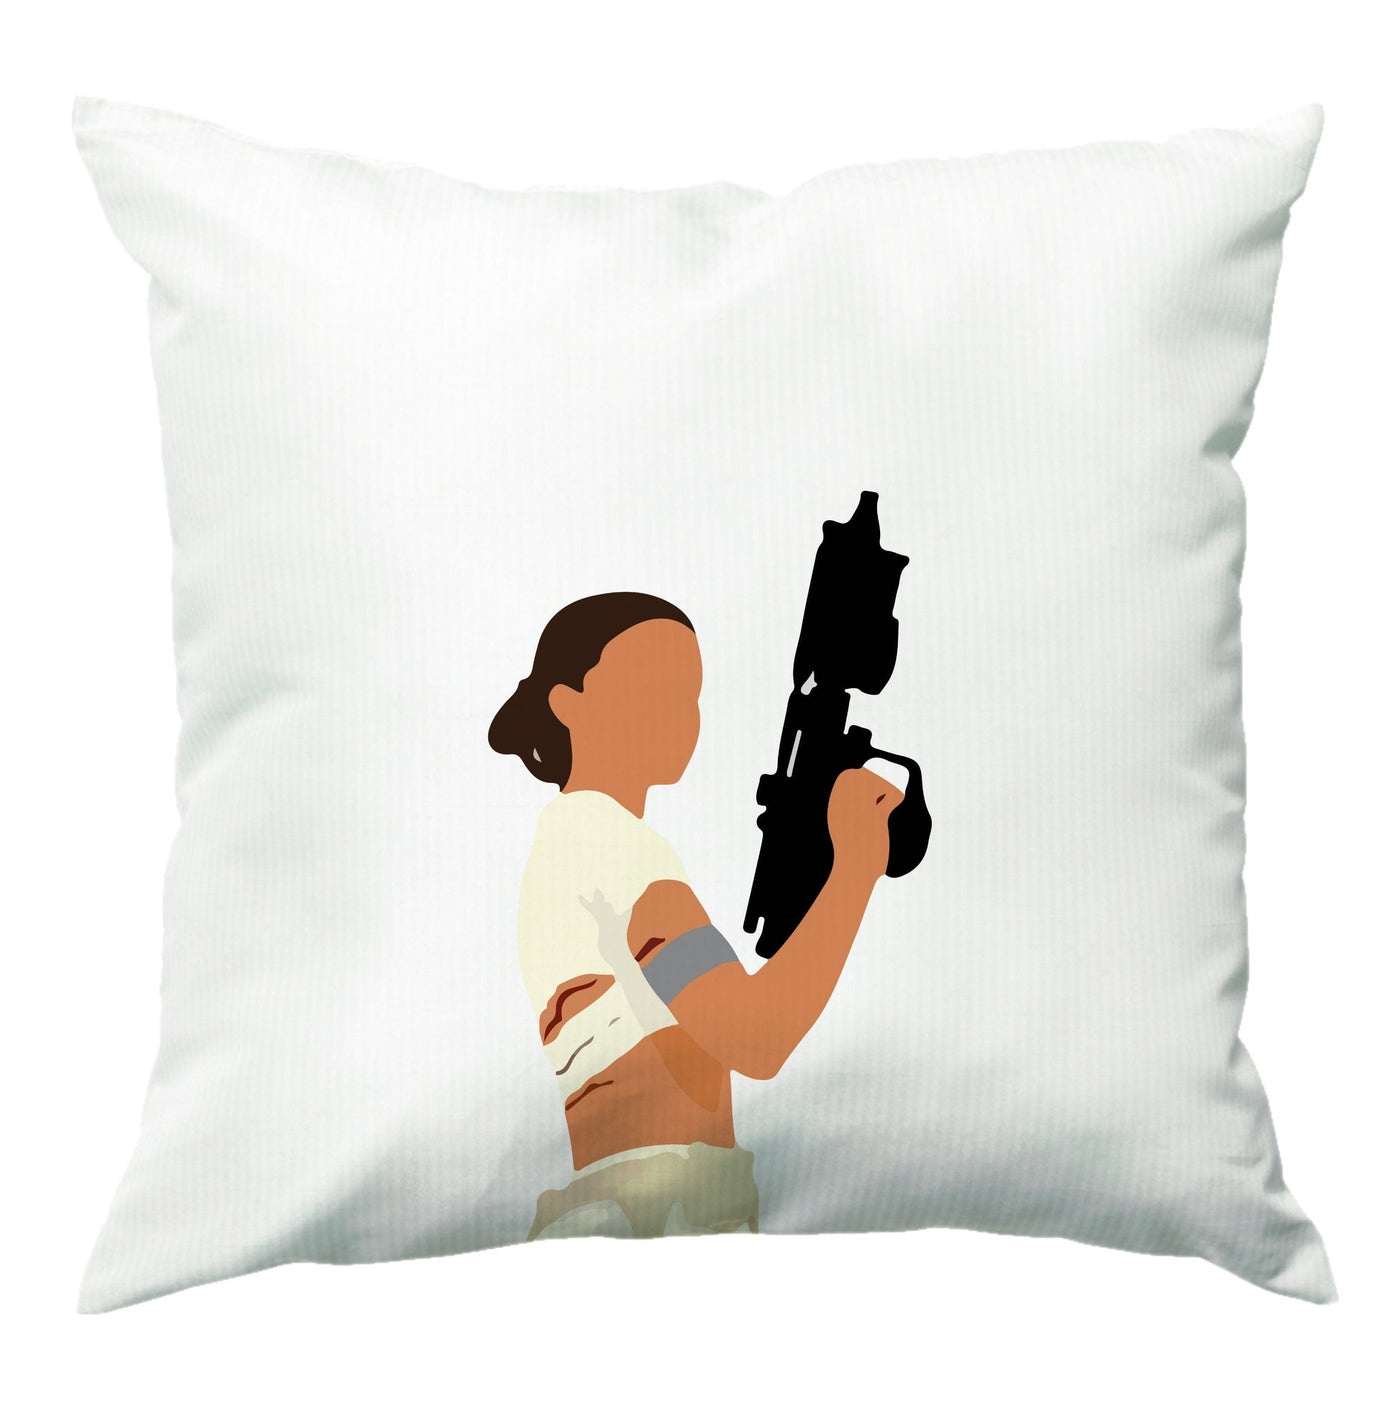 Princess Leia With Gun - Star Wars Cushion